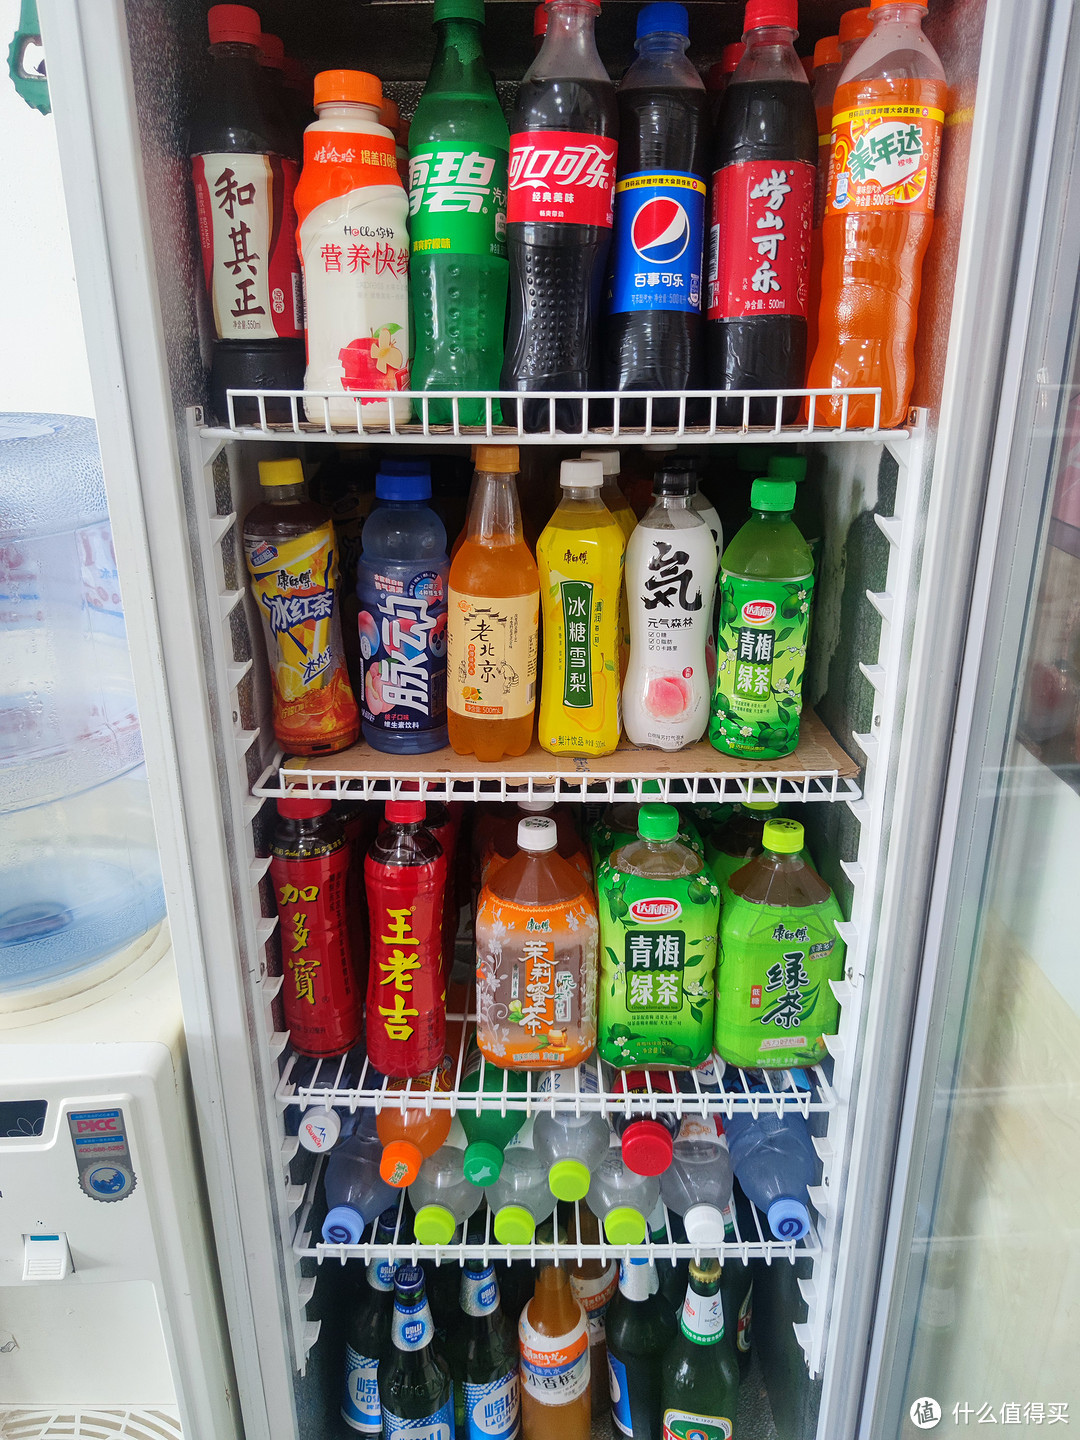 这个是店里的冰箱，虽然饮料款式不全，但每天换一瓶喝，一个月也不能有重样